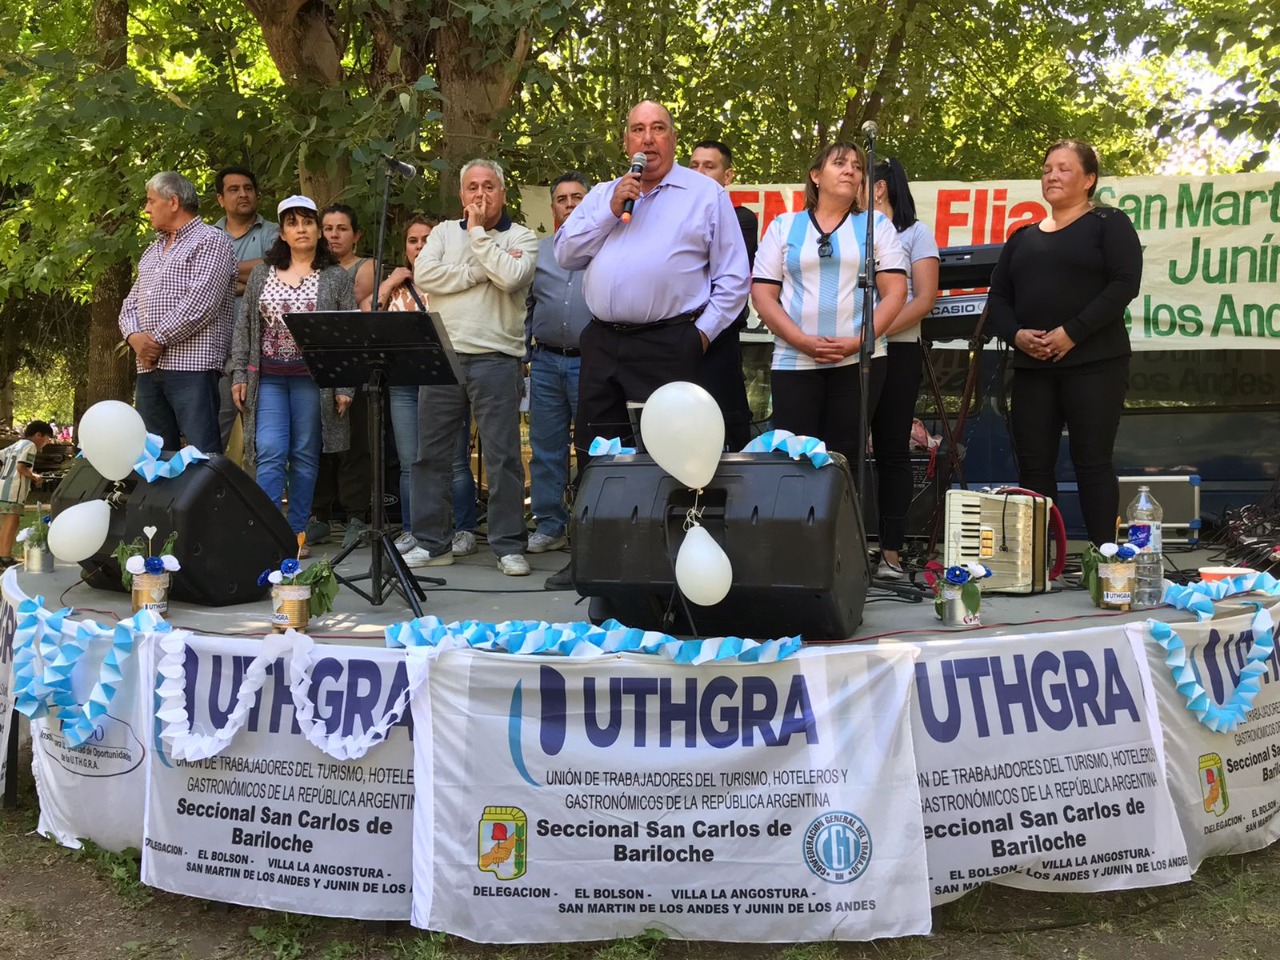 San Martin de los Andes: UTHGRA Bariloche festejó el día de la familia gastronómica